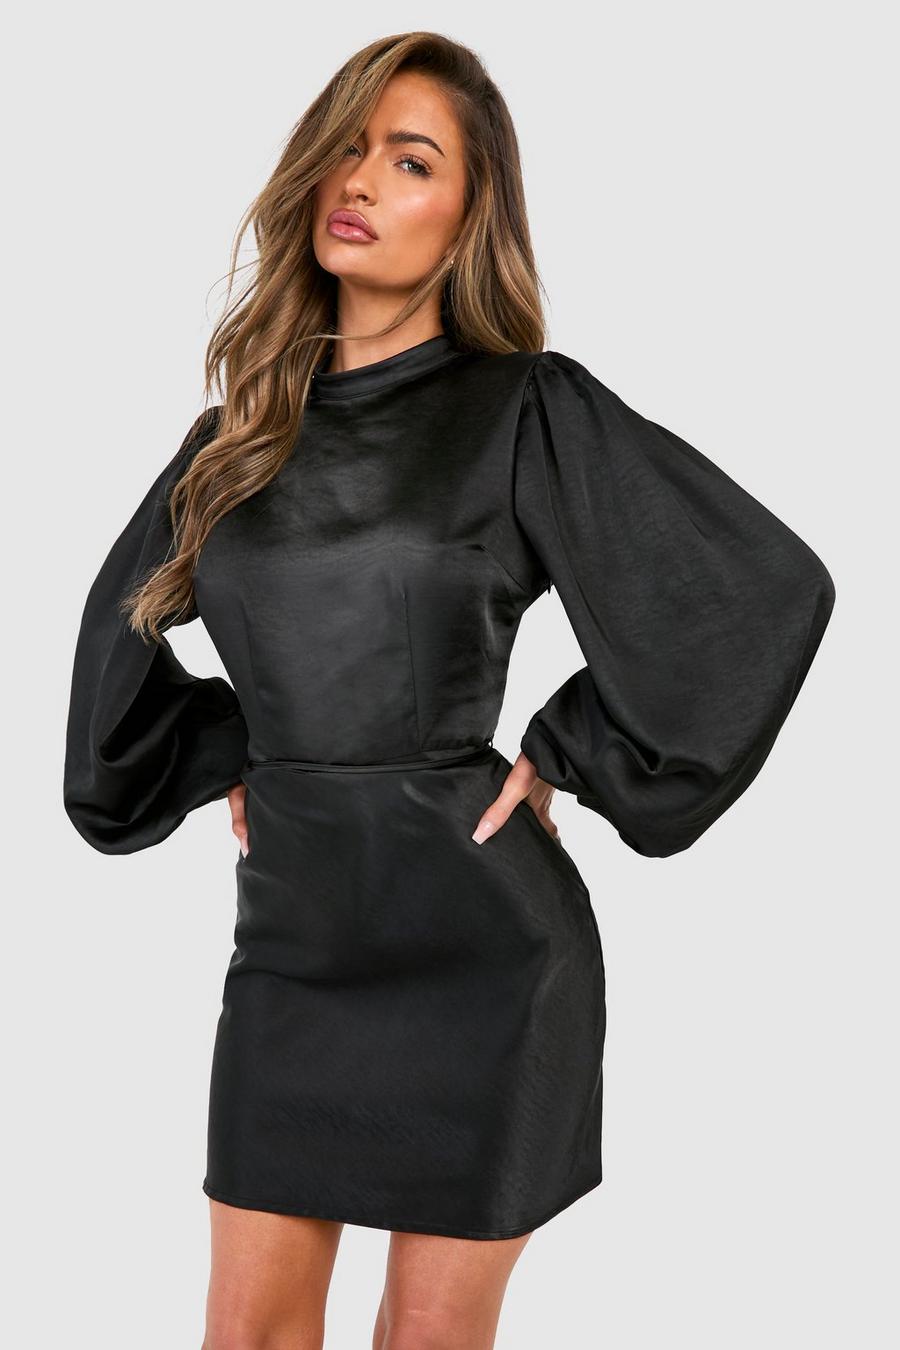 Black Miniklänning i satin med hög hals och ballongärm